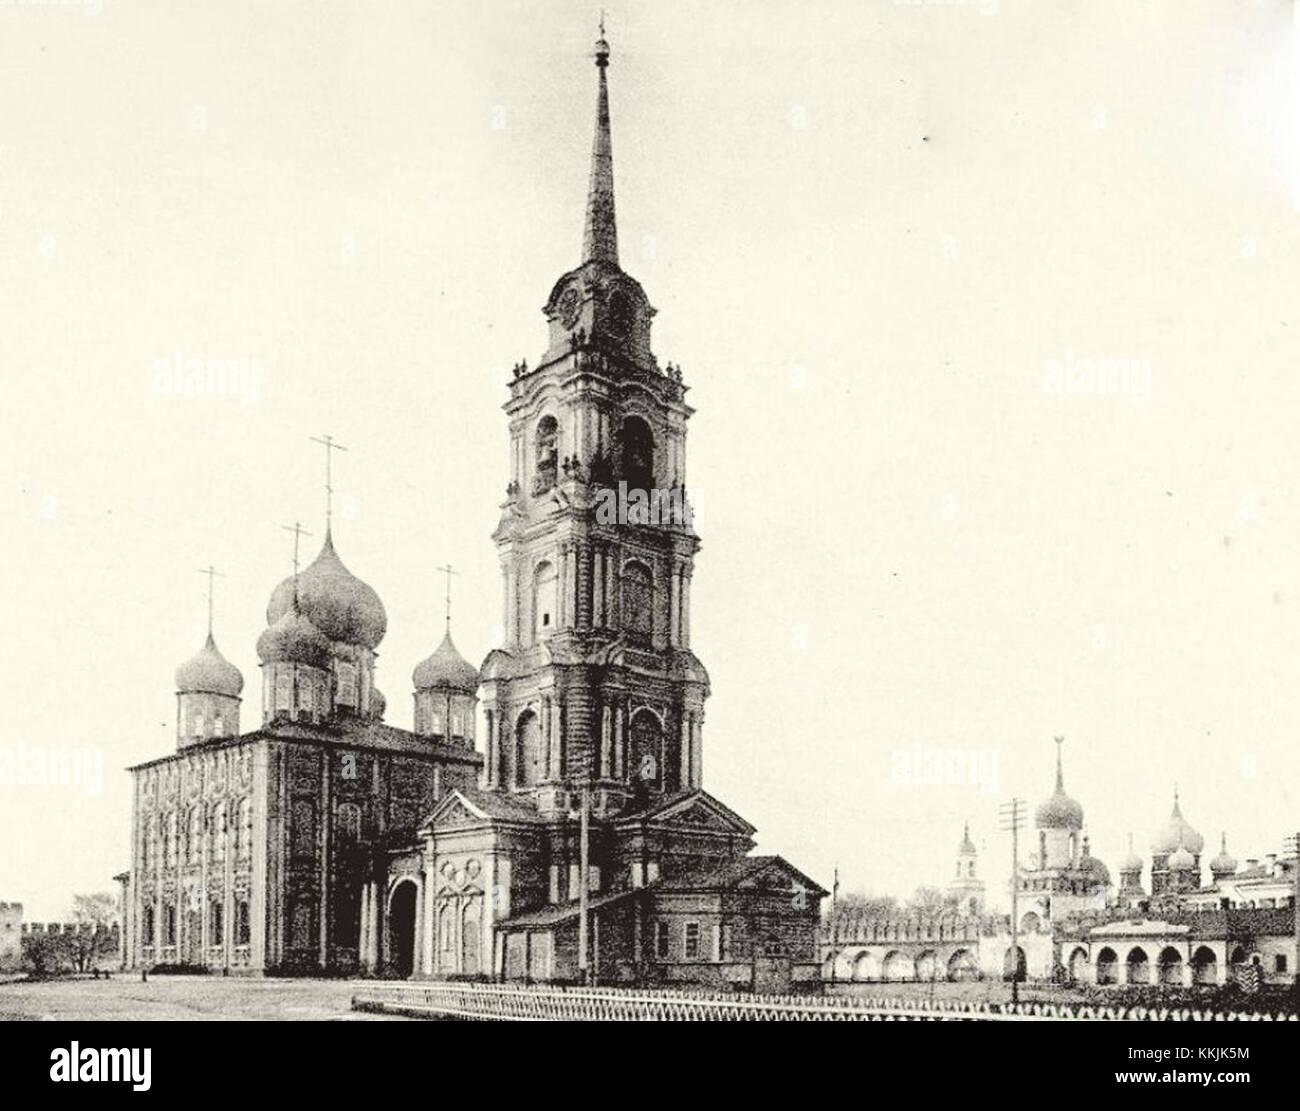 Тула в 18 веке. Колокольня Успенского собора Тула. Колокольня Тула Кремль.